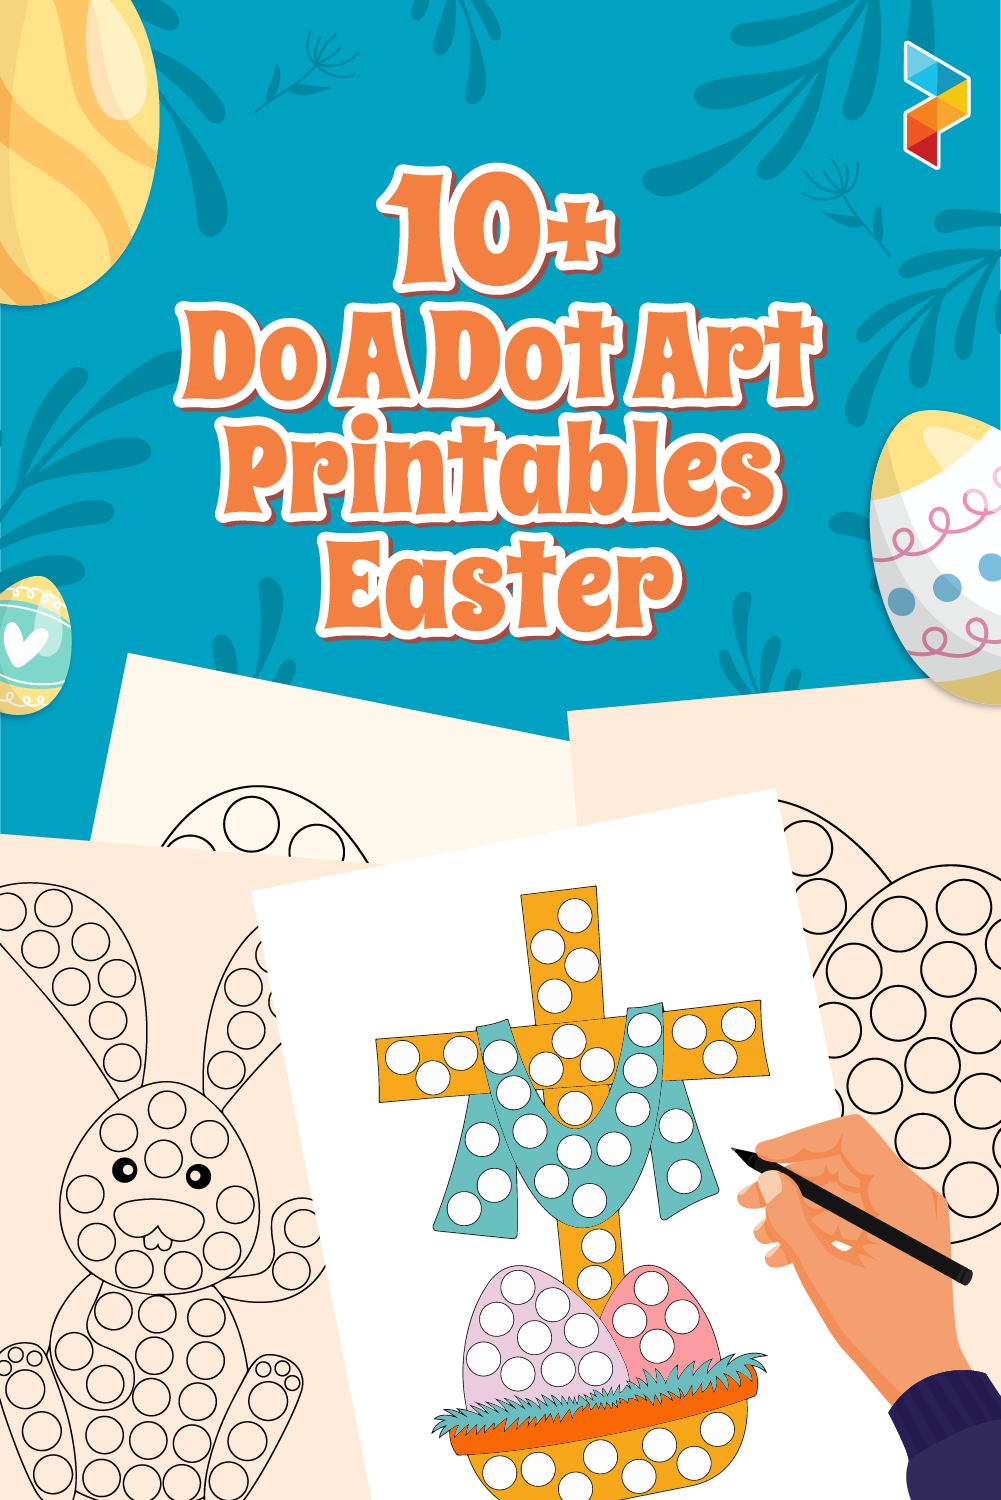 Do A Dot Art s Easter